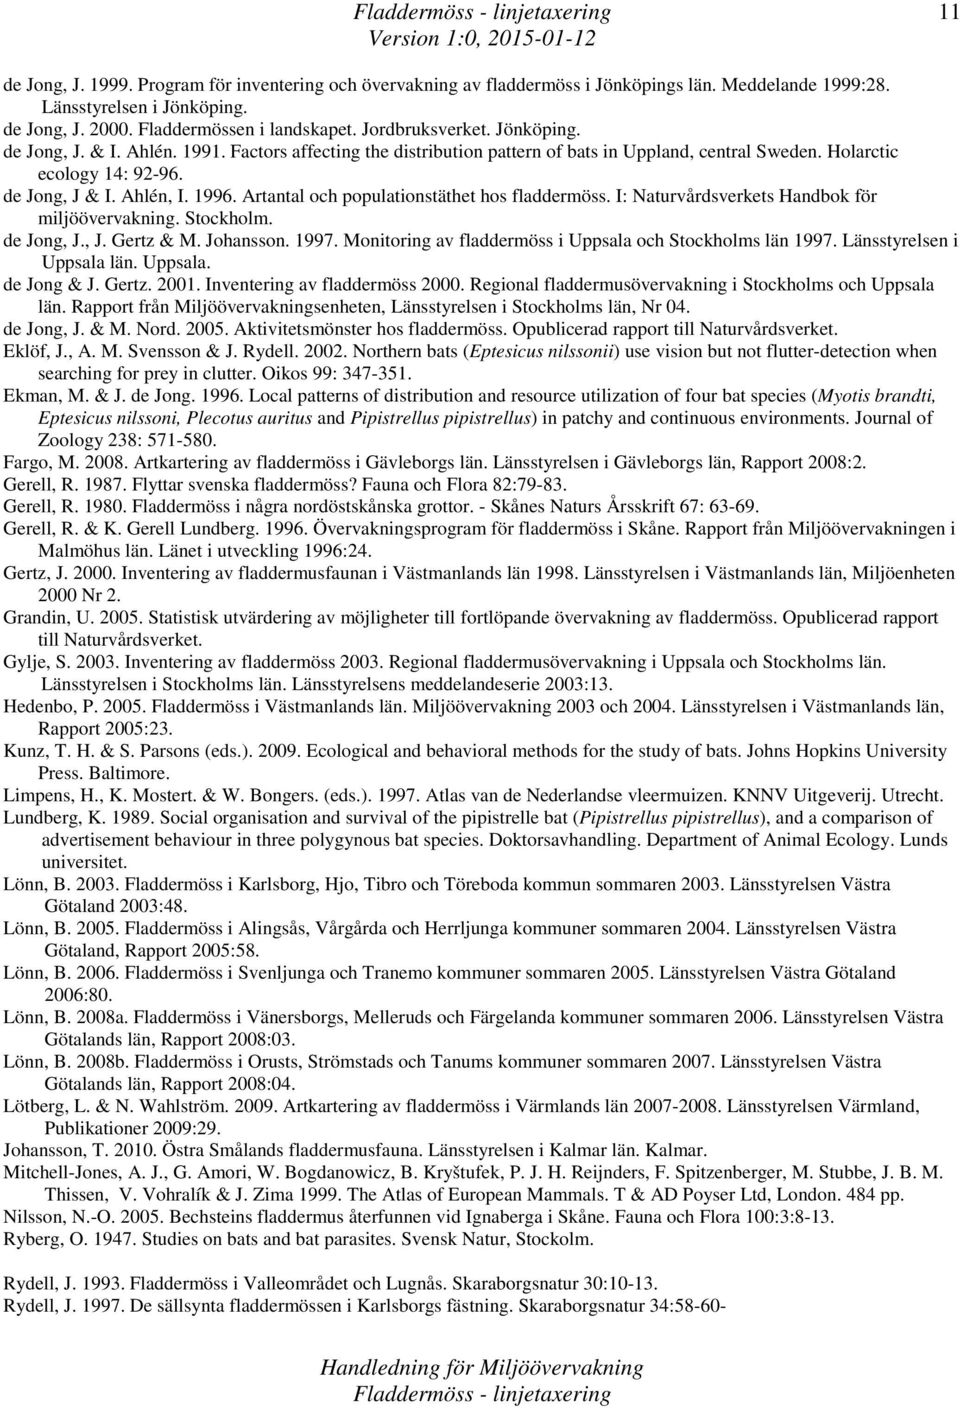 Artantal och populationstäthet hos fladdermöss. I: Naturvårdsverkets Handbok för miljöövervakning. Stockholm. de Jong, J., J. Gertz & M. Johansson. 1997.